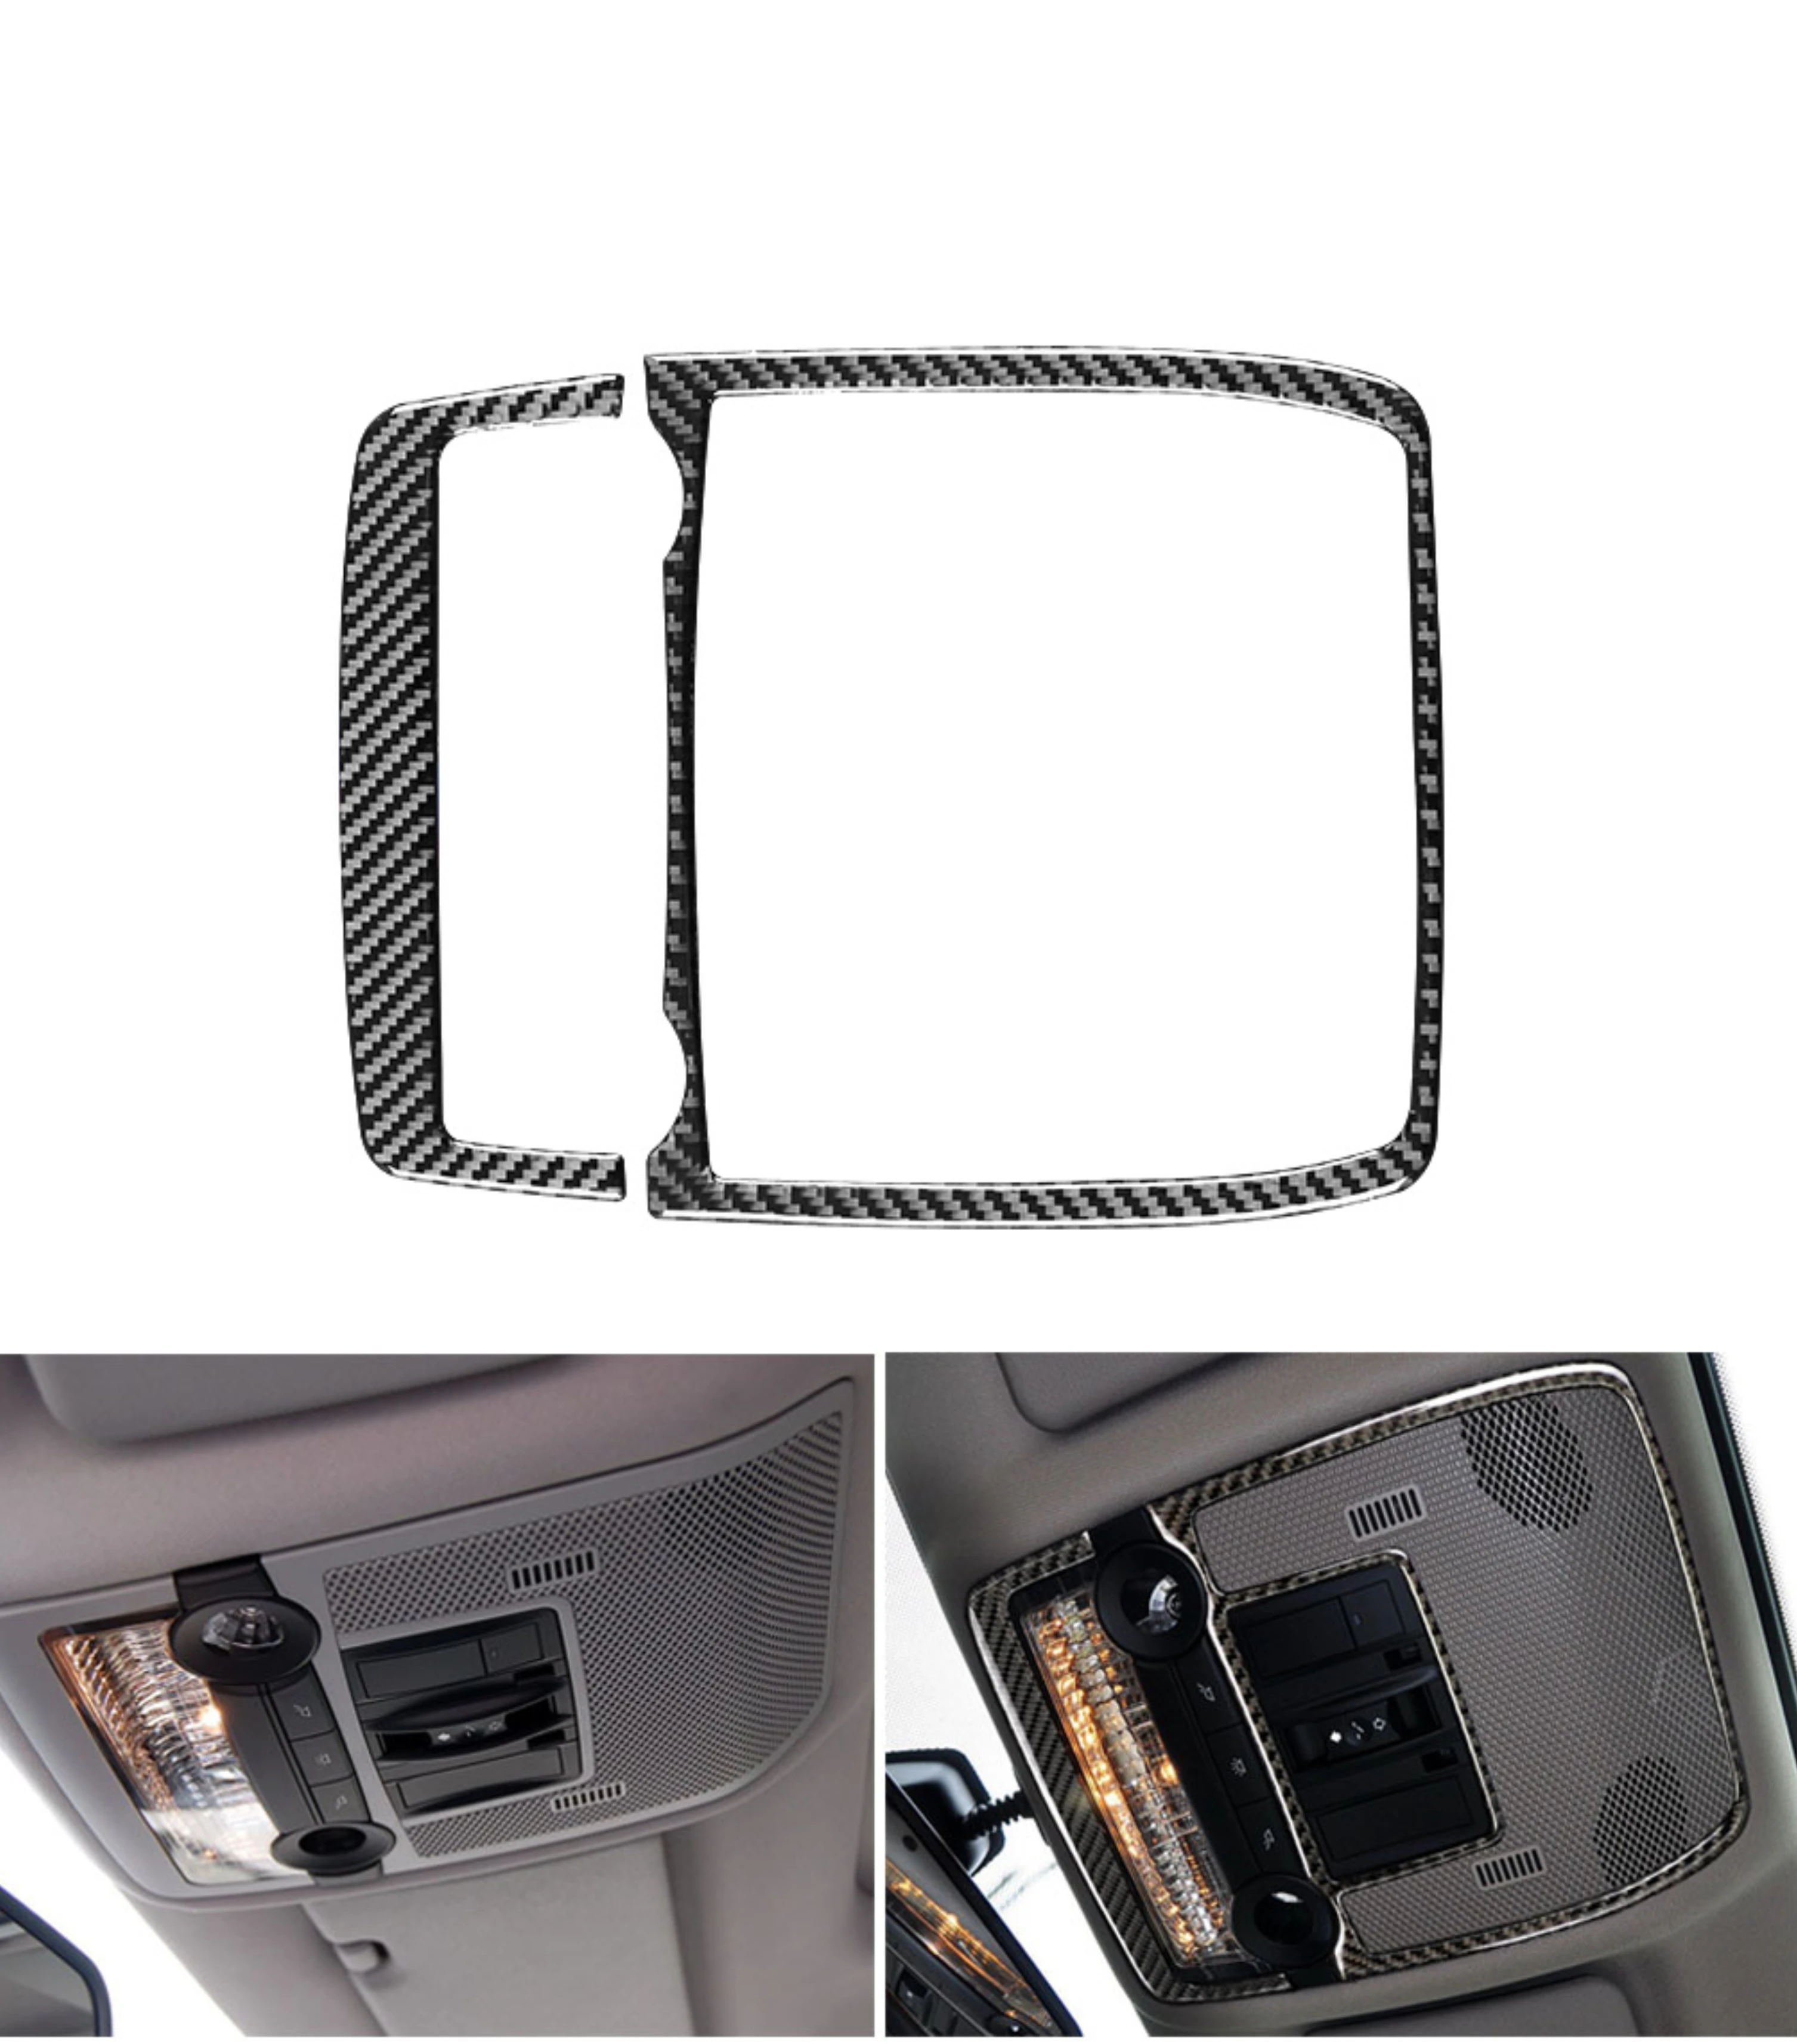 

For BMW X5 E70 X6 E71 2007-2014 Car Front Reading Light Cover Trim Sticker Carbon Fiber Decal Decoration Interior Accessories